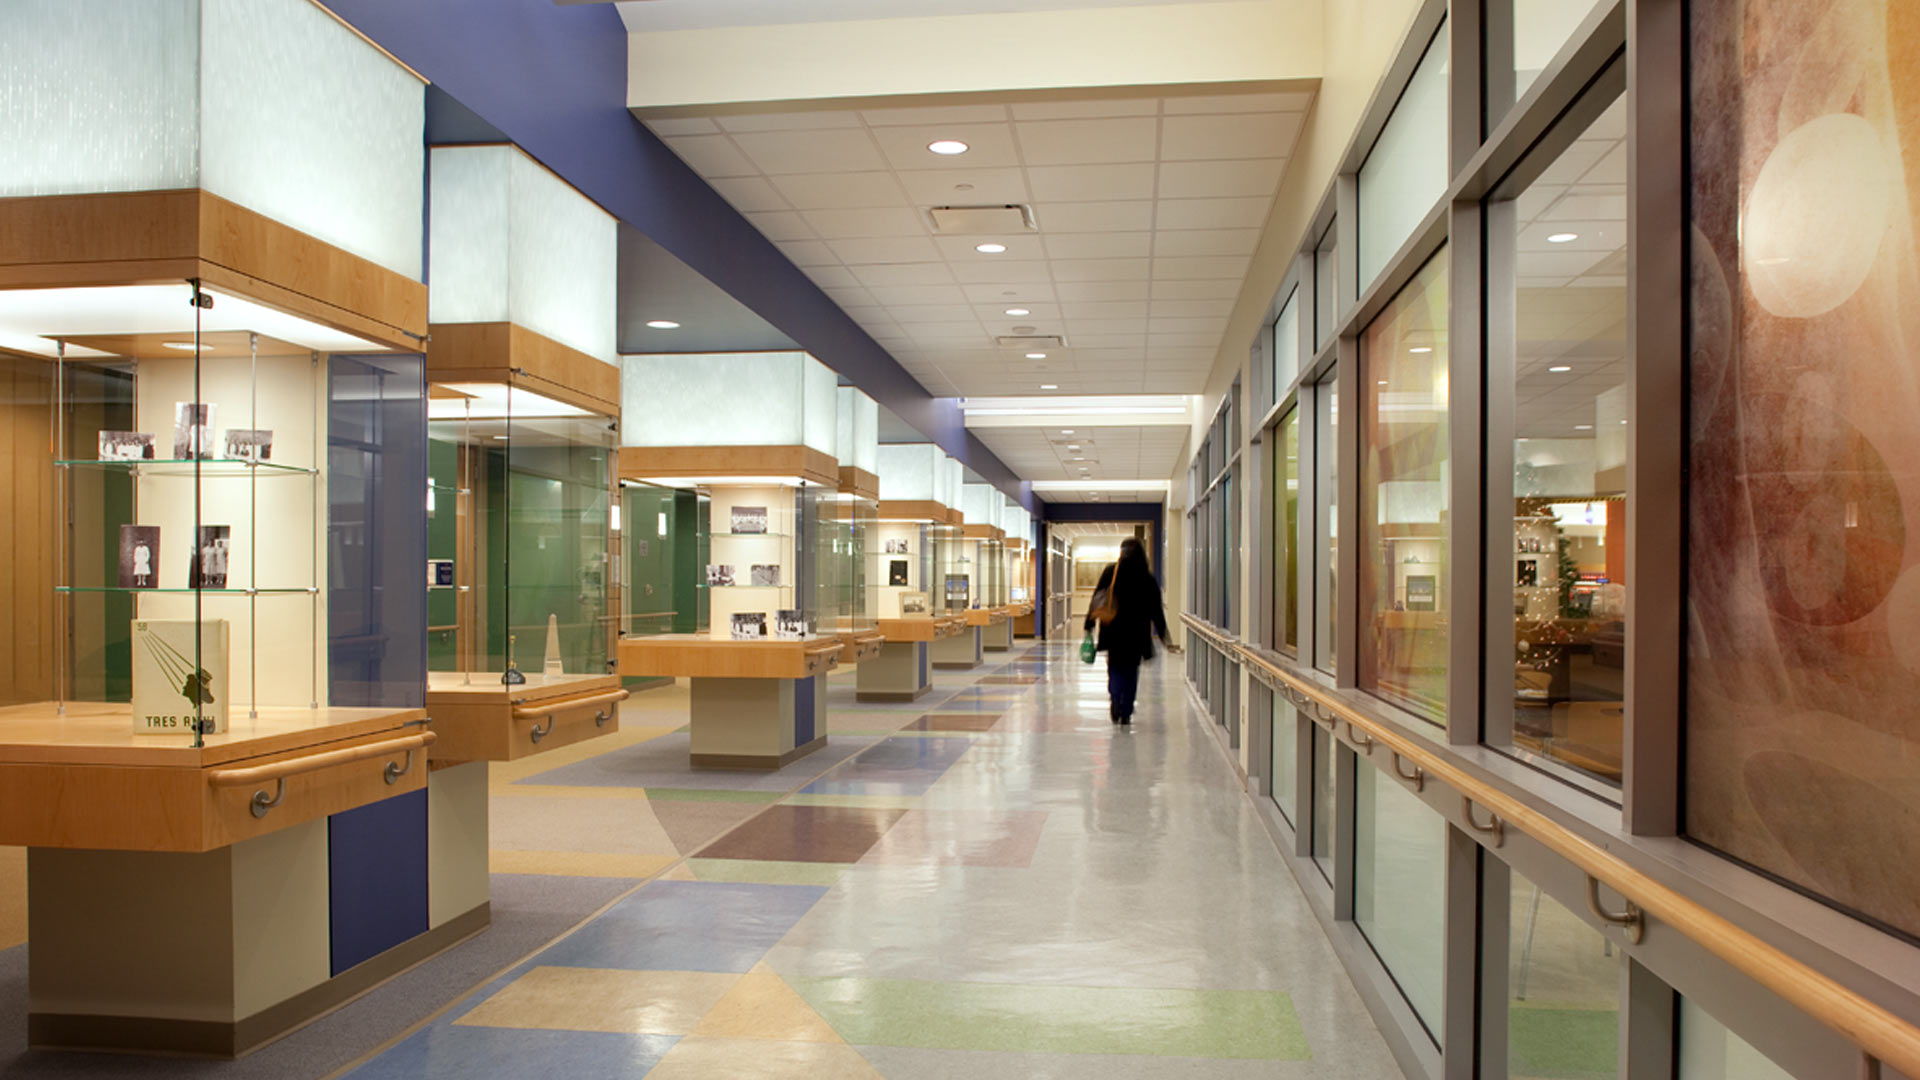 Western Maryland Health System - Hospital Entrance / Hallway